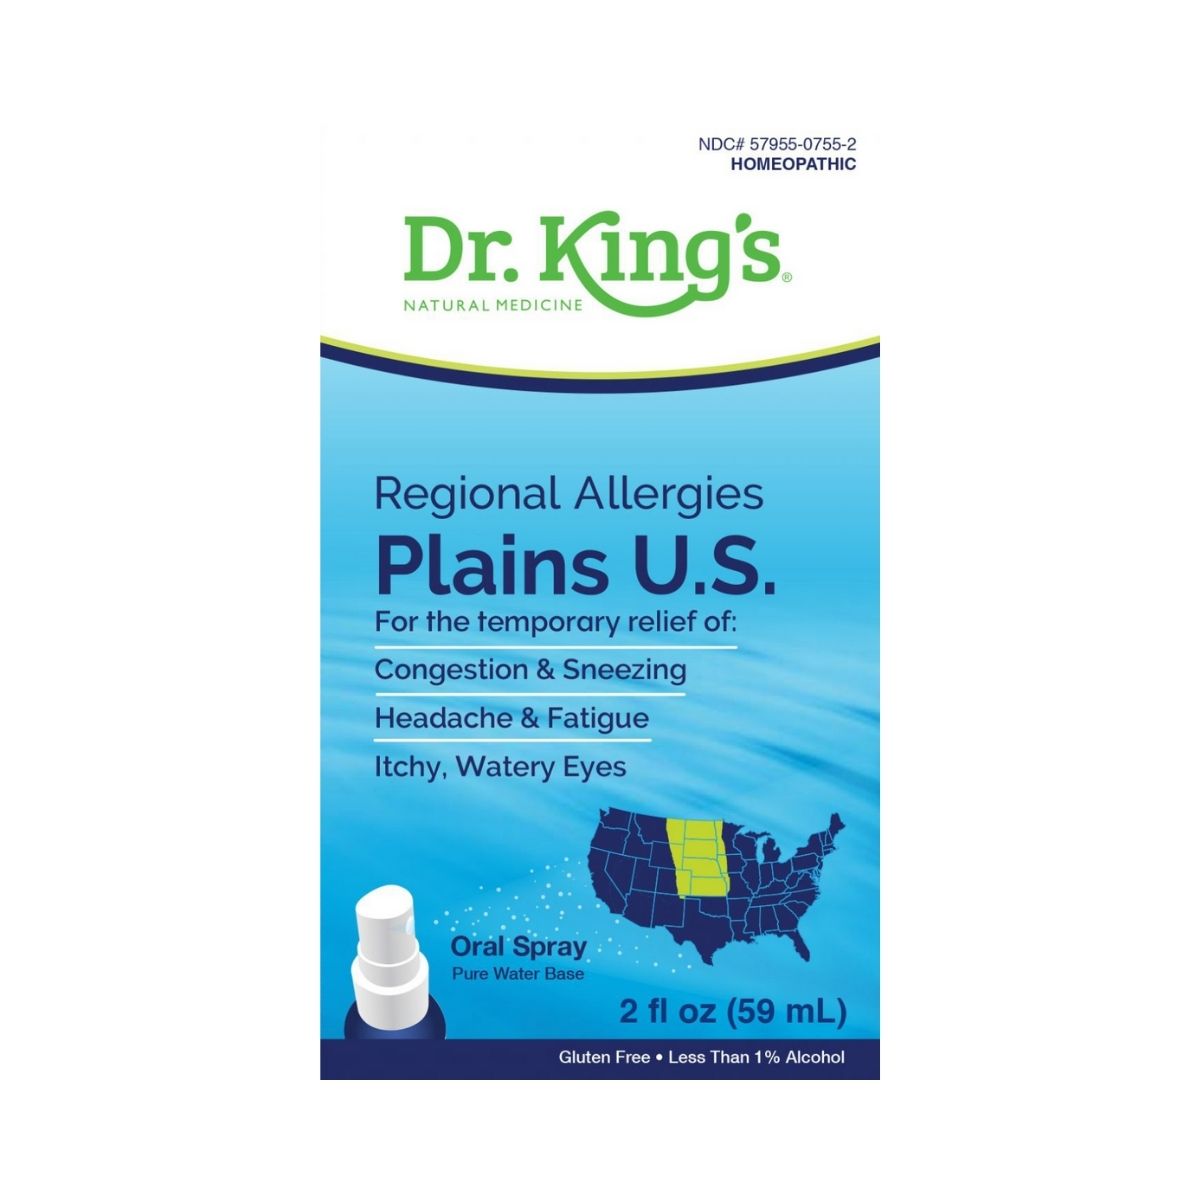 Regional Allergies: Plains U.S.